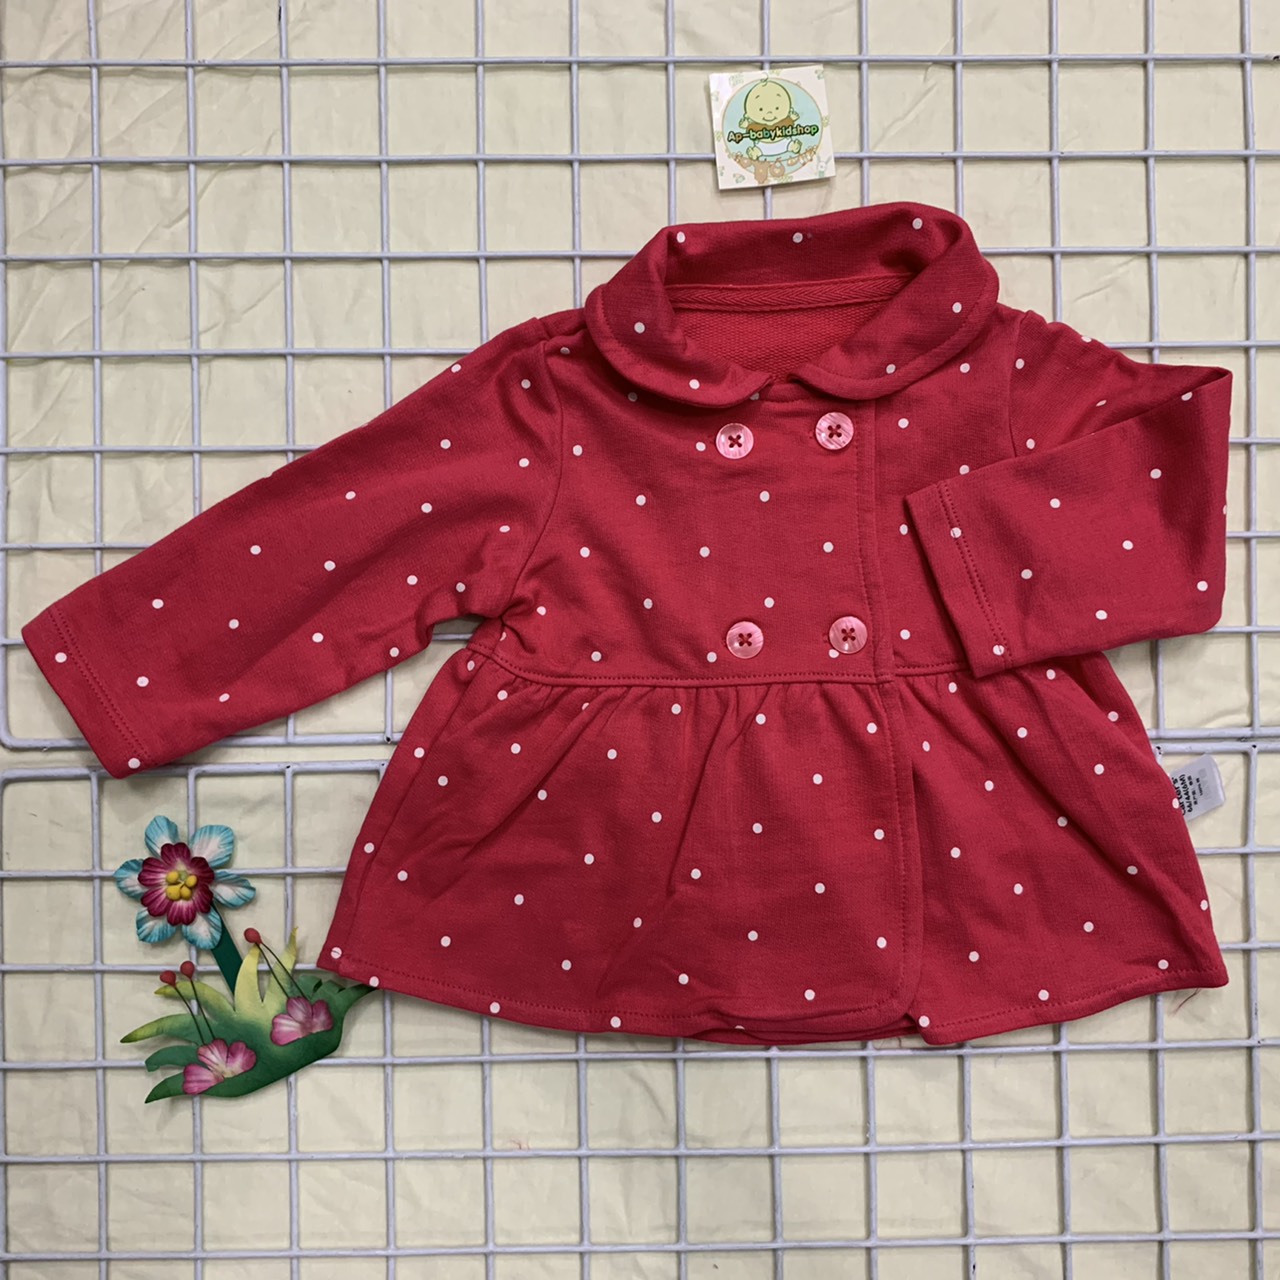 เสื้อคลุมเดี่ยวสีแดงลายจุด ไซส์6-9,18-24เดือน ผ้าใส่กันหนาว Cotton100%